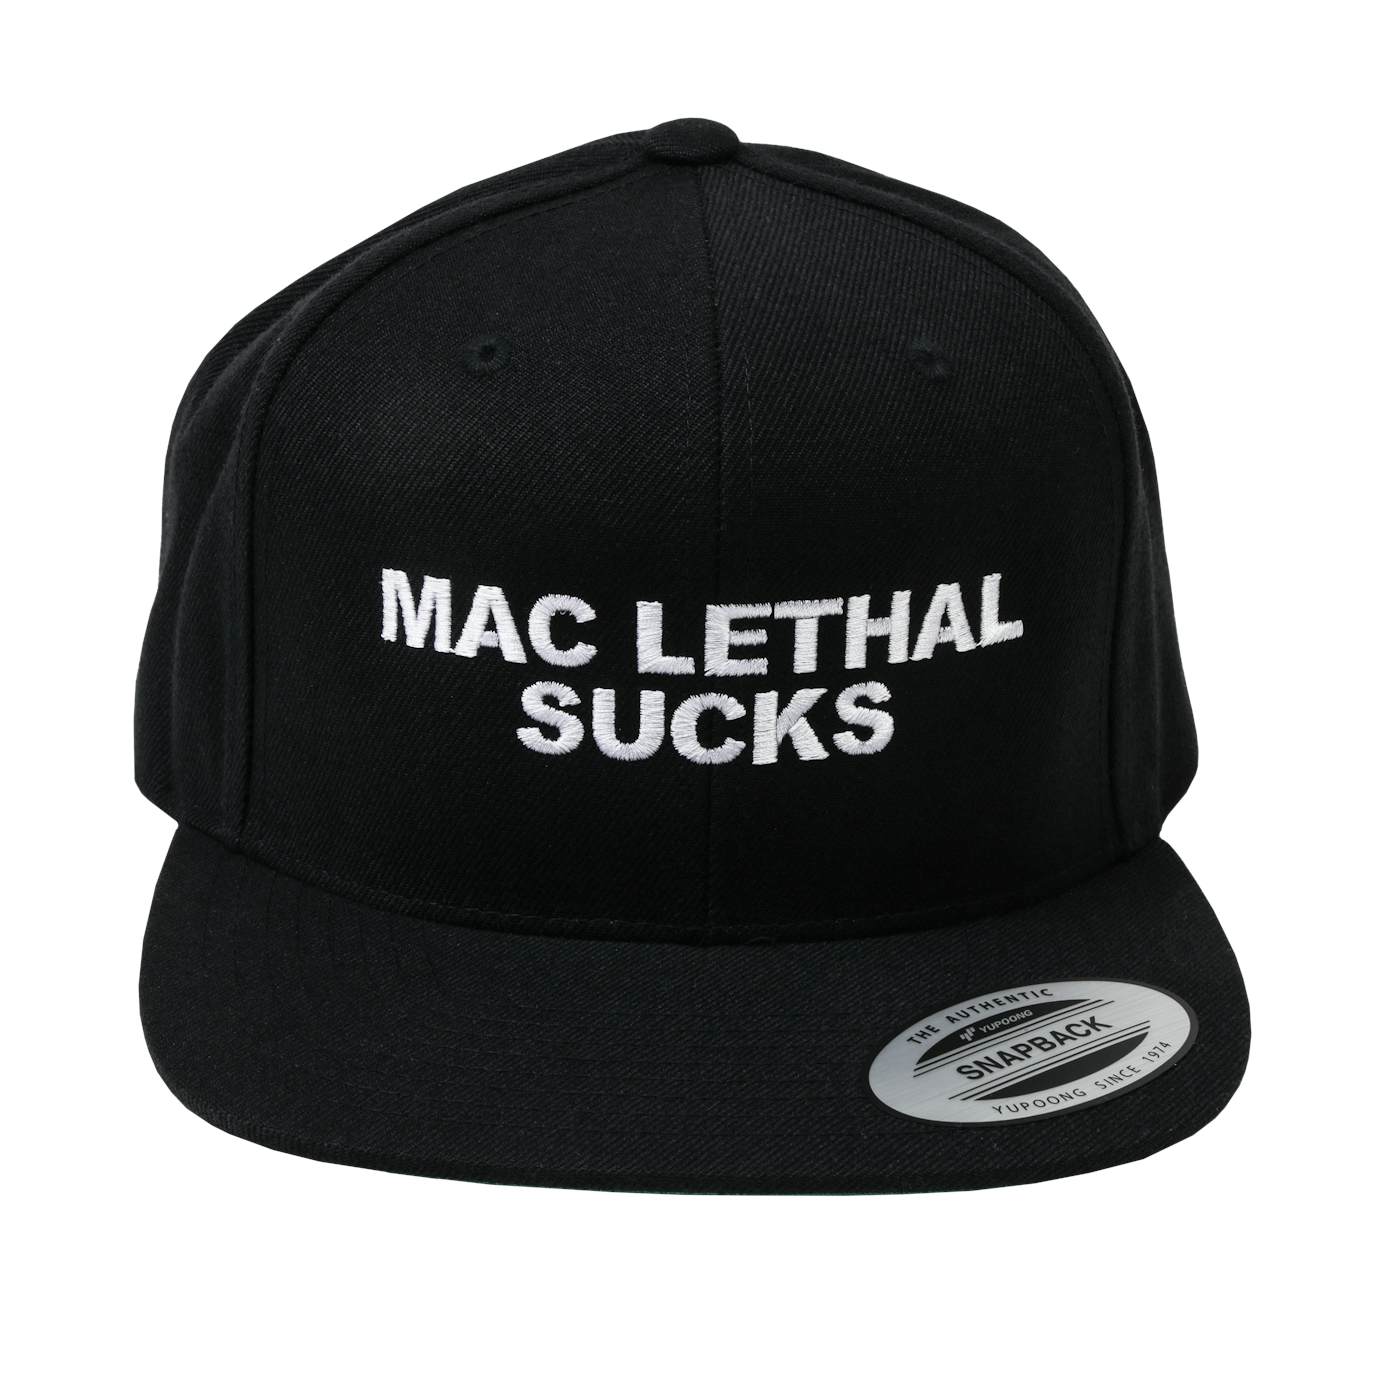 Mac Lethal Shotgun Tool $5.00